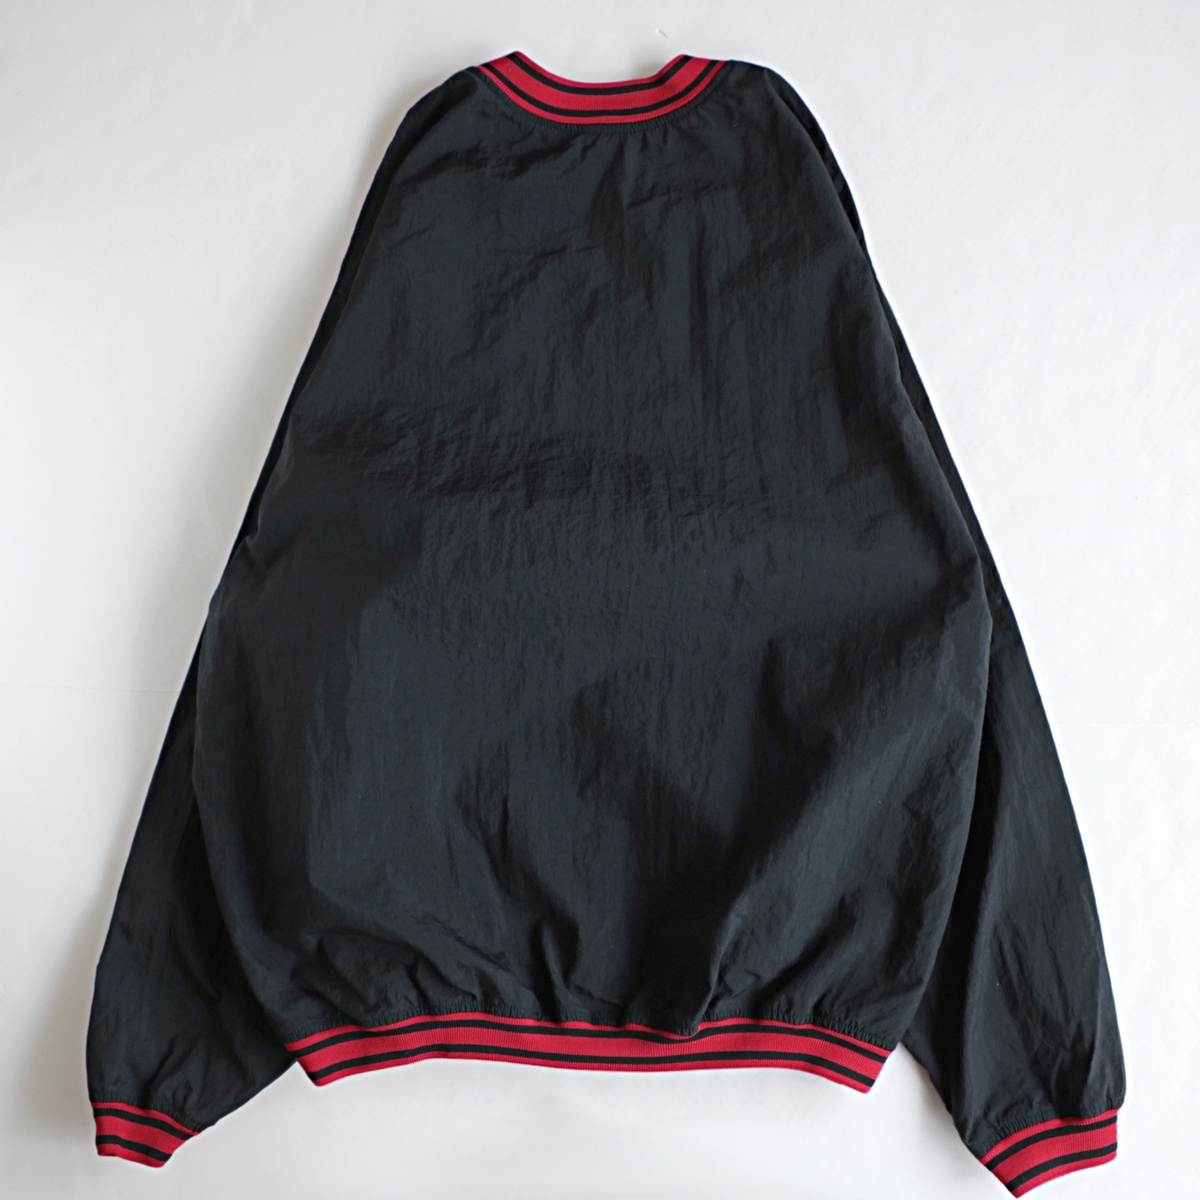 90s NIKE ナイキ プルオーバー ナイロン ジャケット 古着 used ブラック×レッド – khaki select clothing